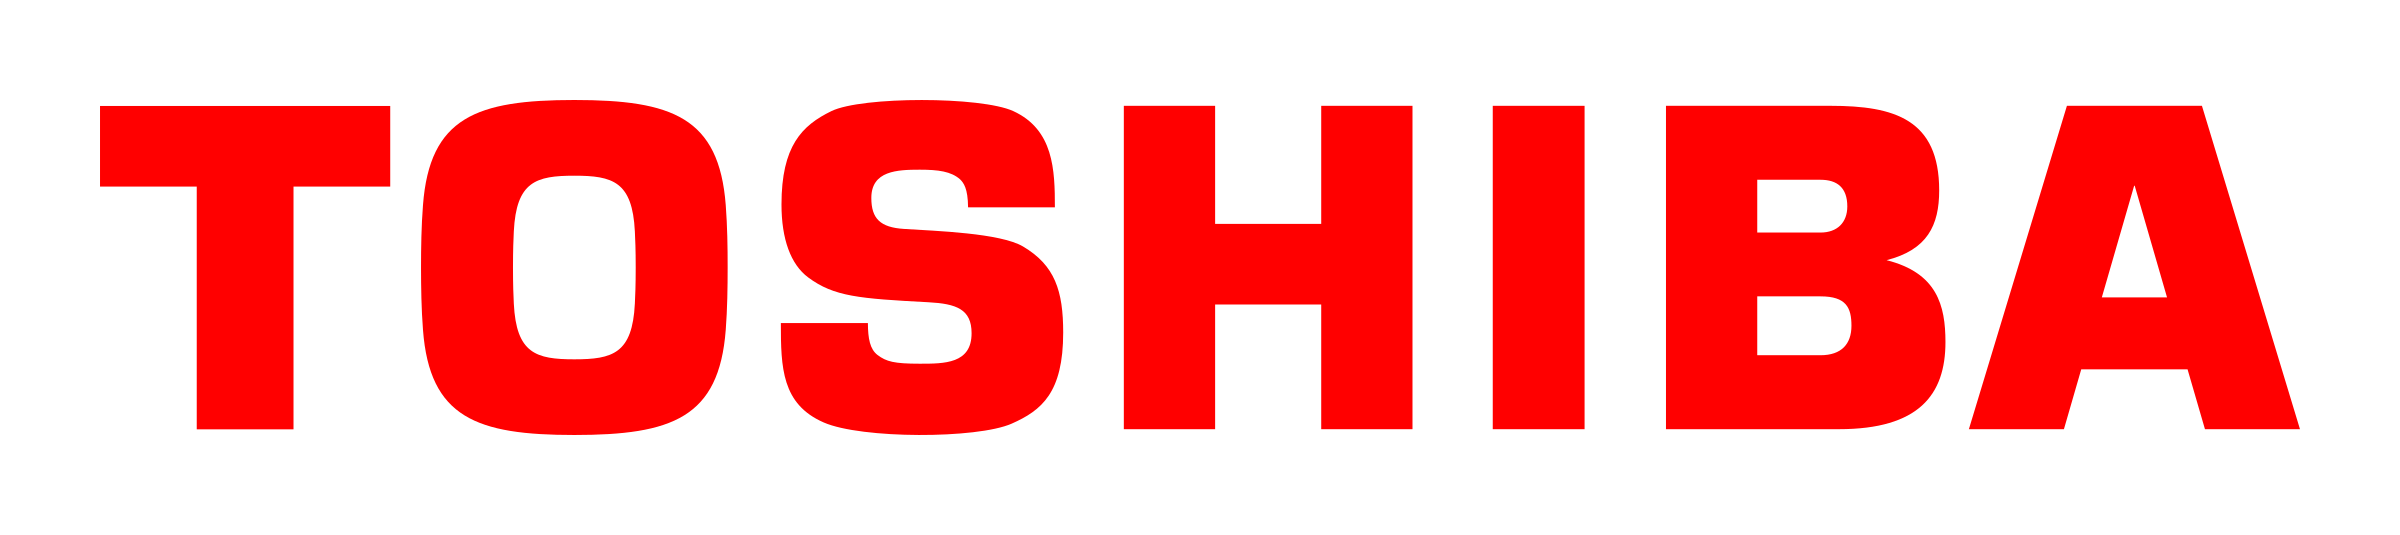 TOSHIBA Sign